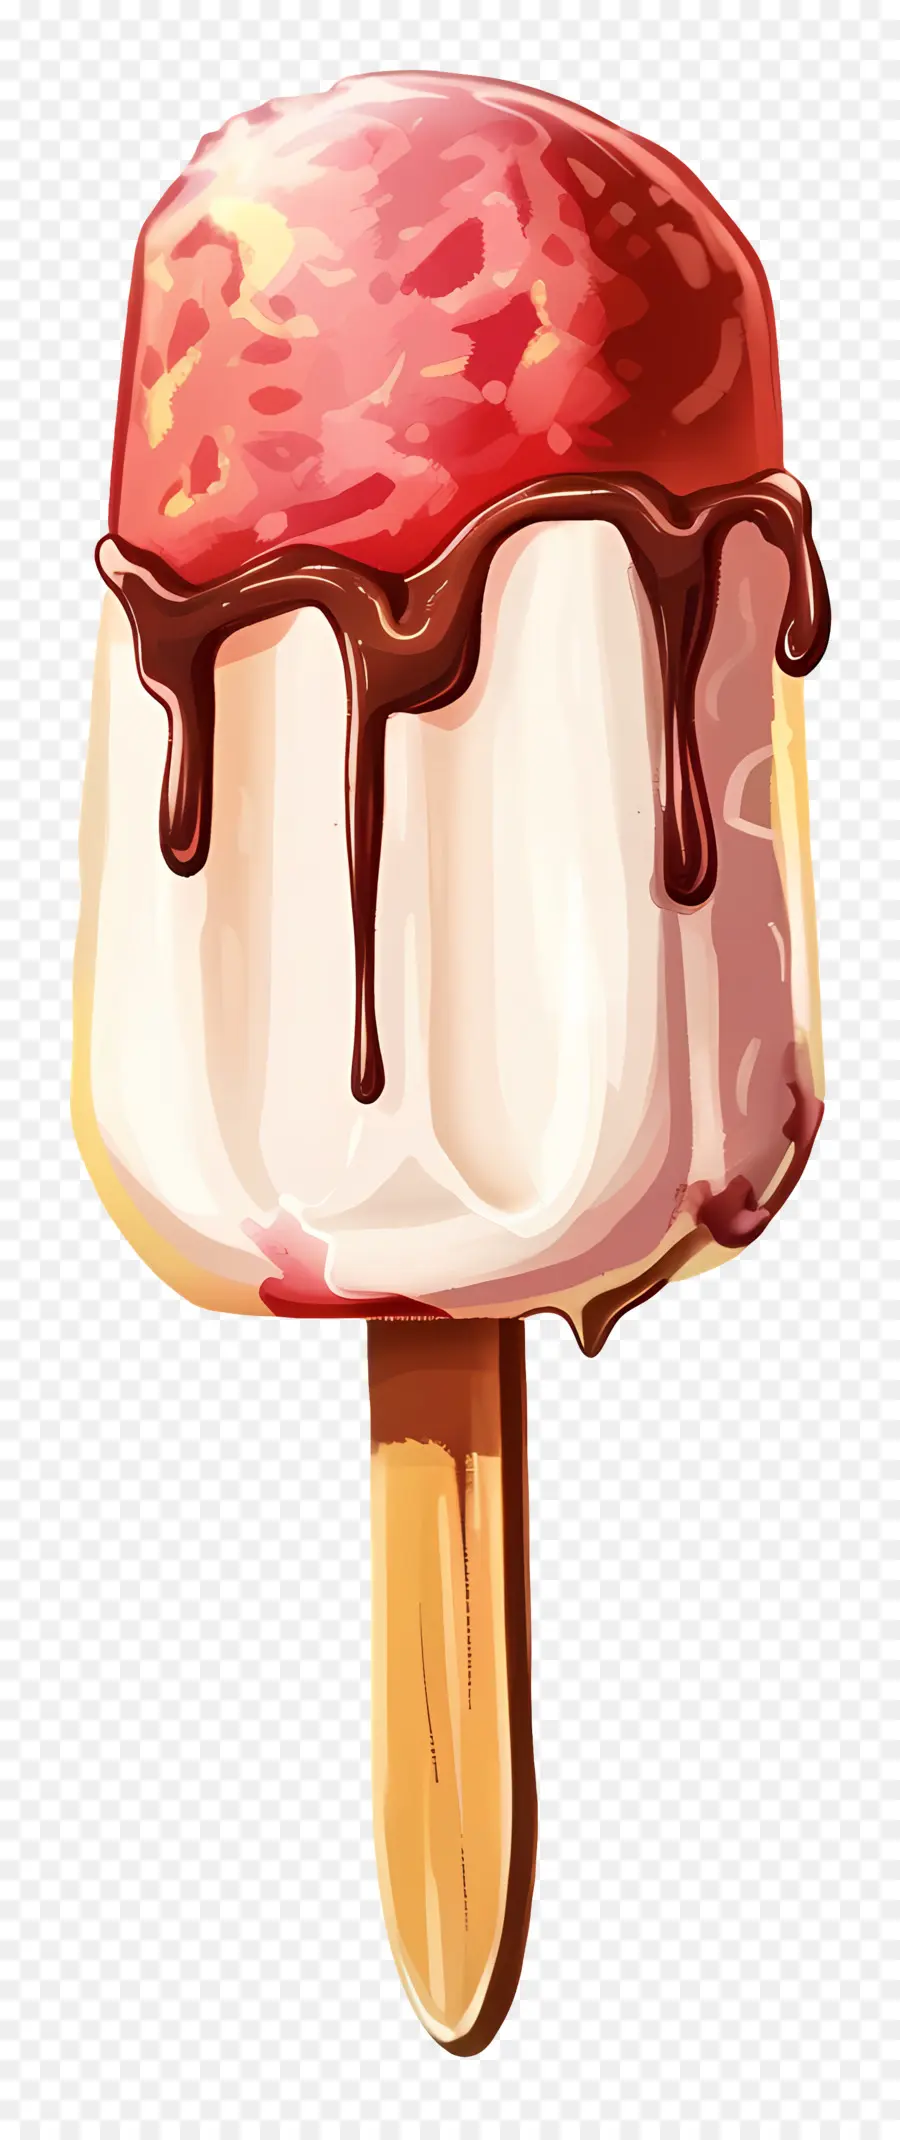 gelato - Cono gelato rosso e bianco con sciroppo